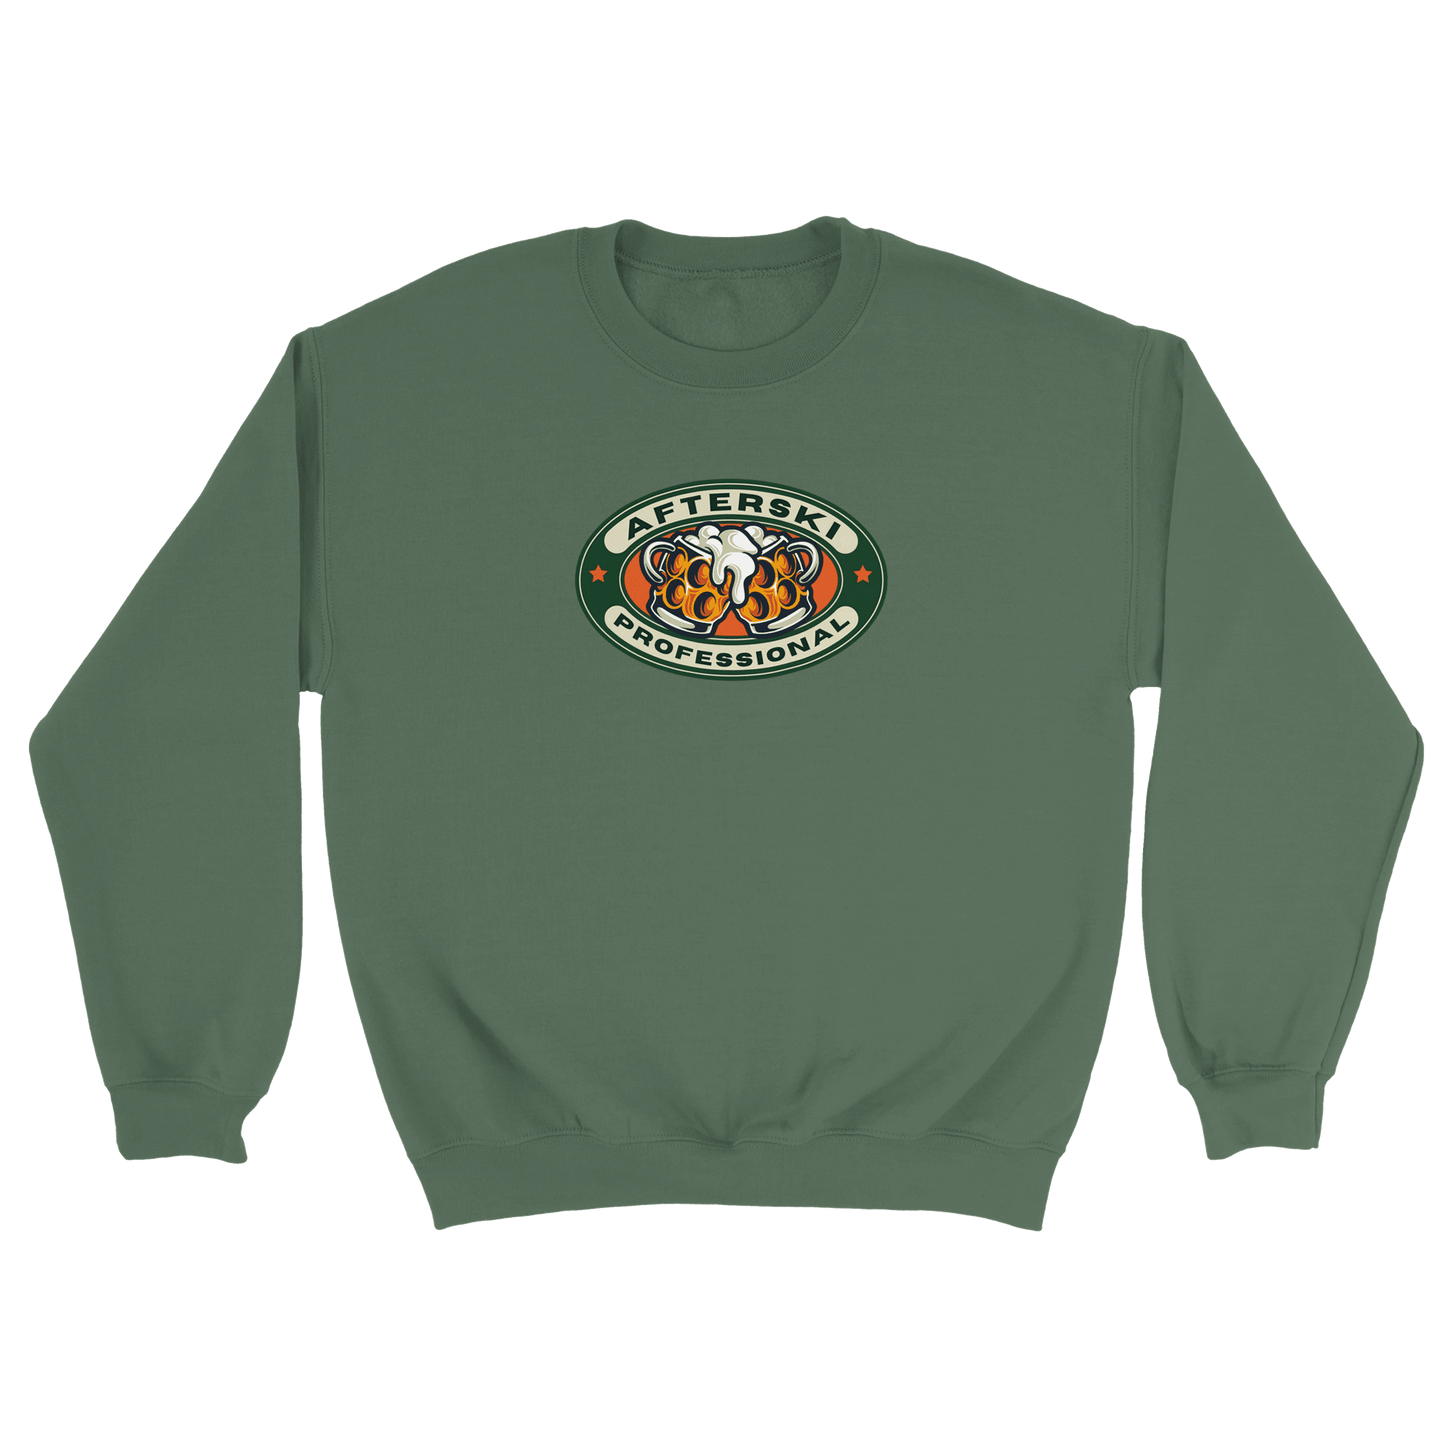 Afterski Professional - Sweatshirt Militärgrön